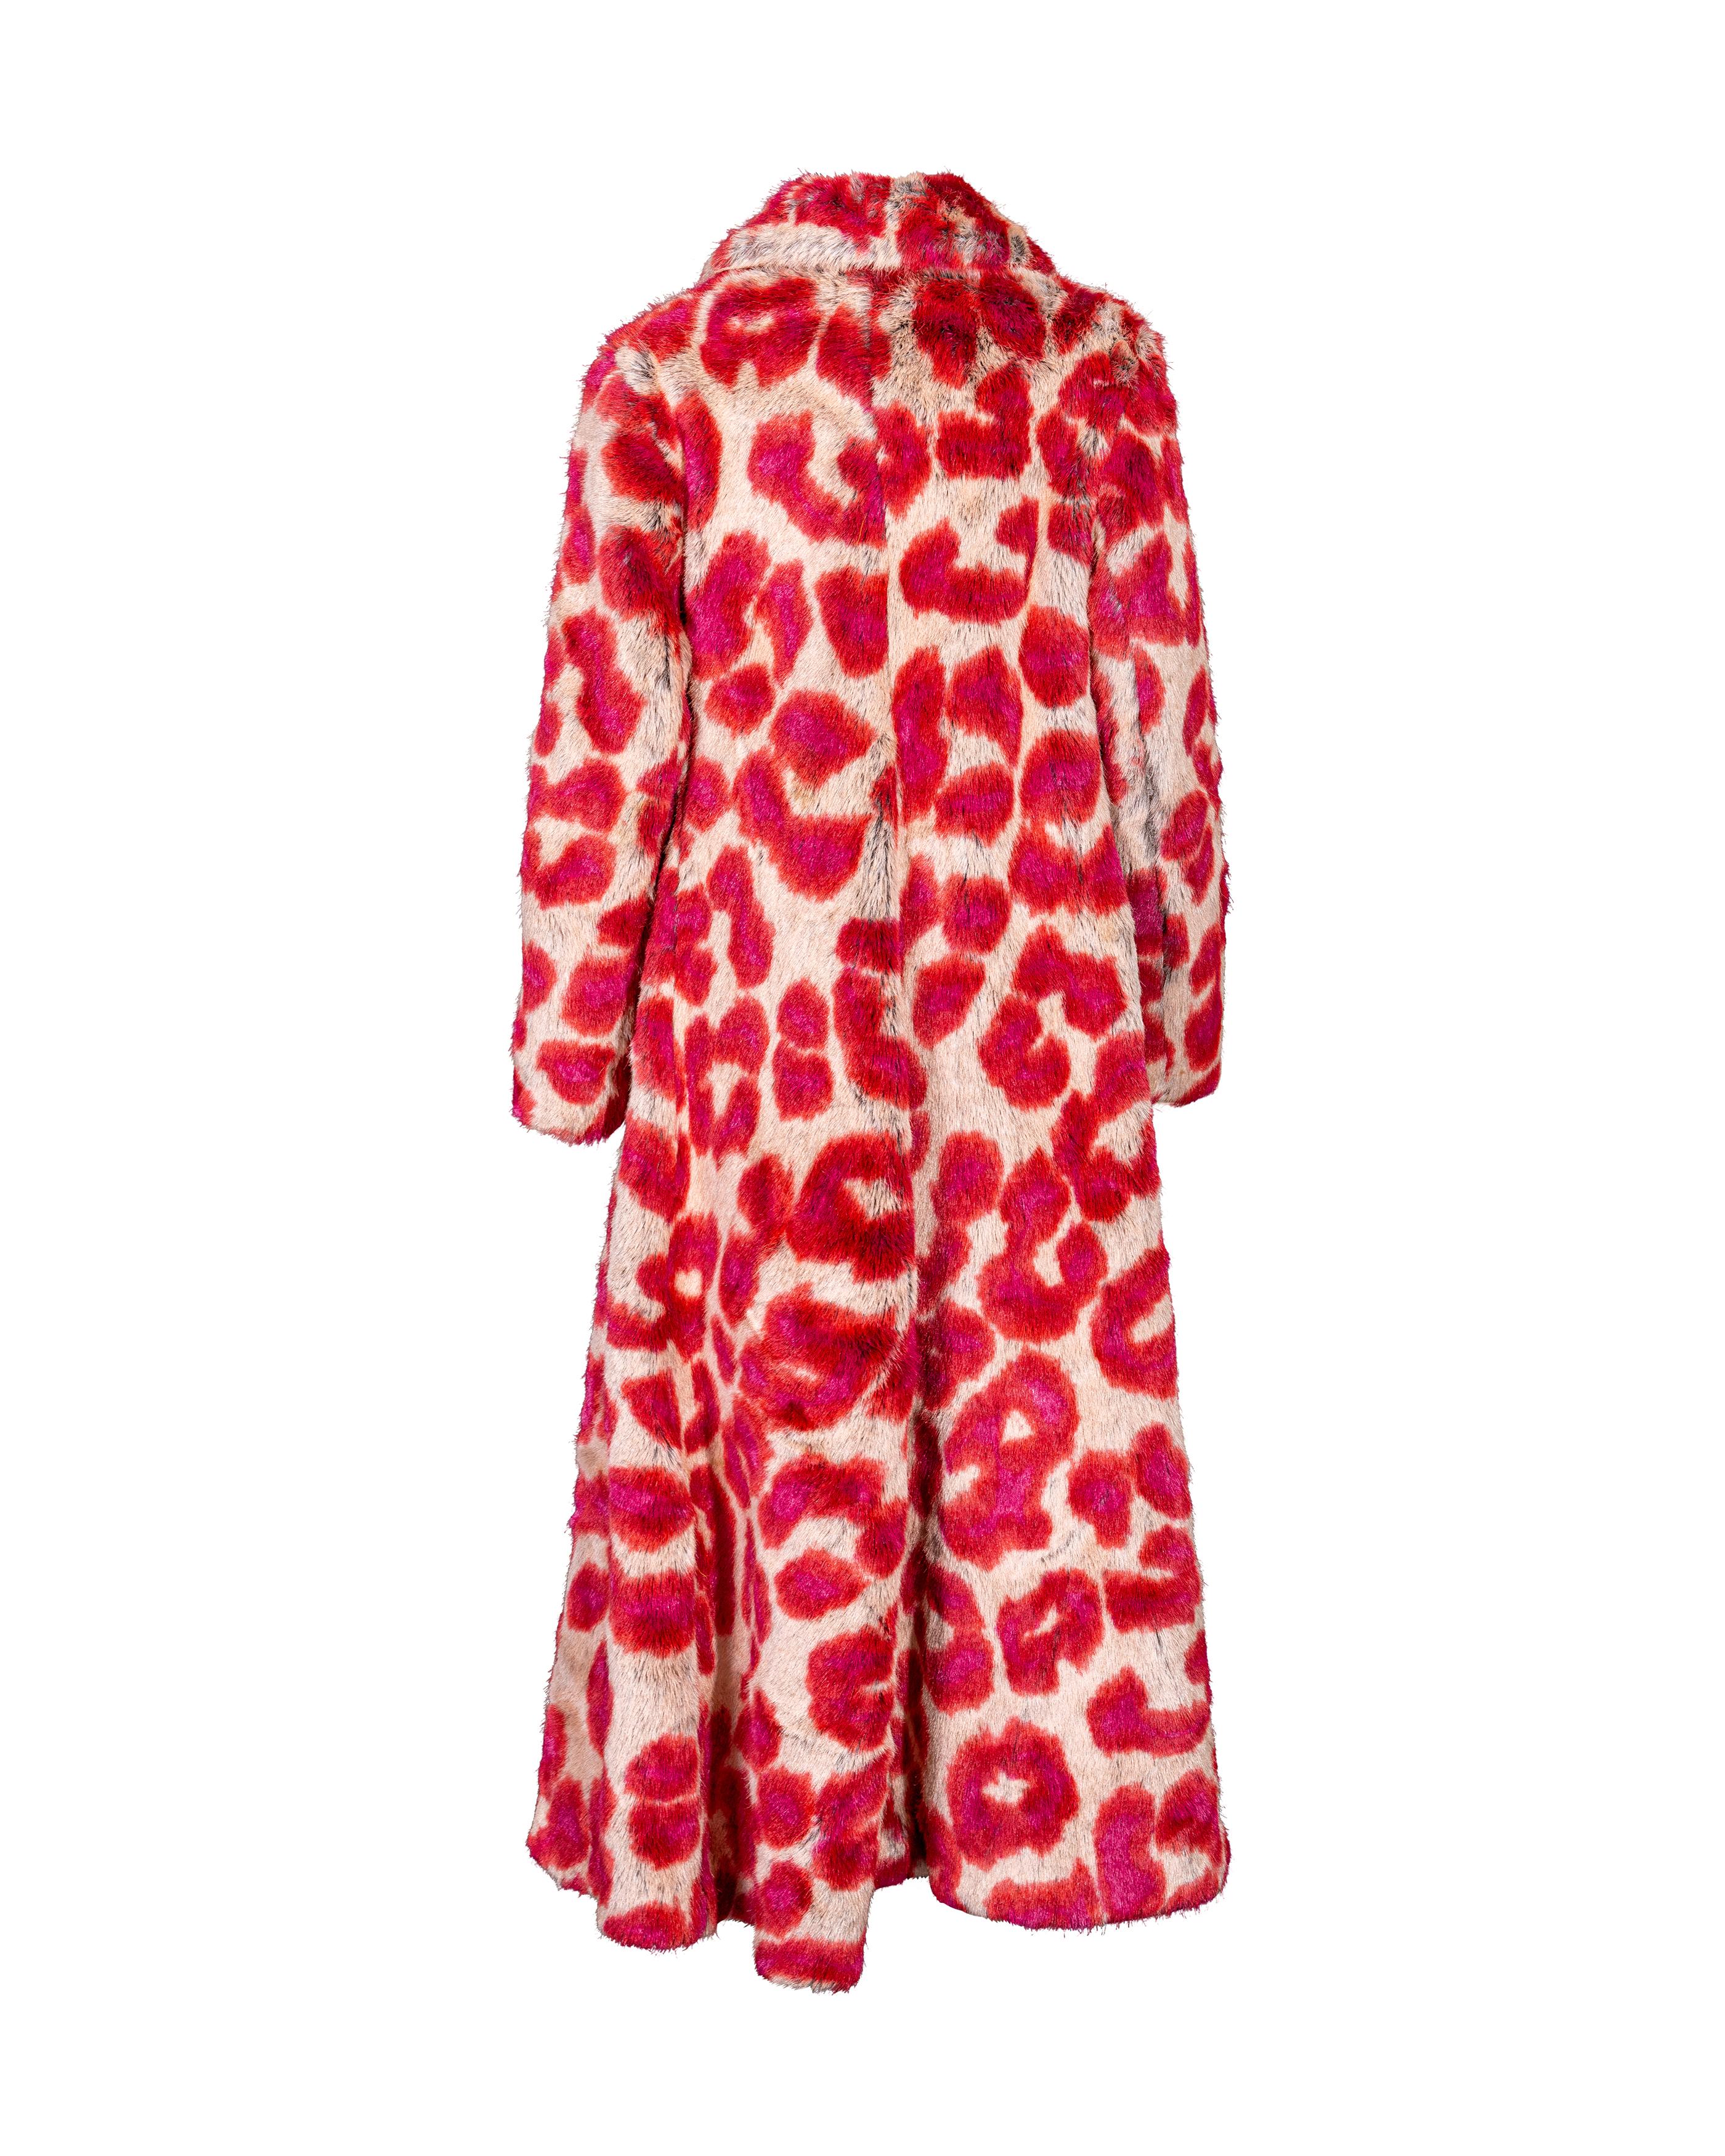 A/W 1992 Vivienne Westwood Faux Fur Leopard Print Coat and Glove Set For Sale 2